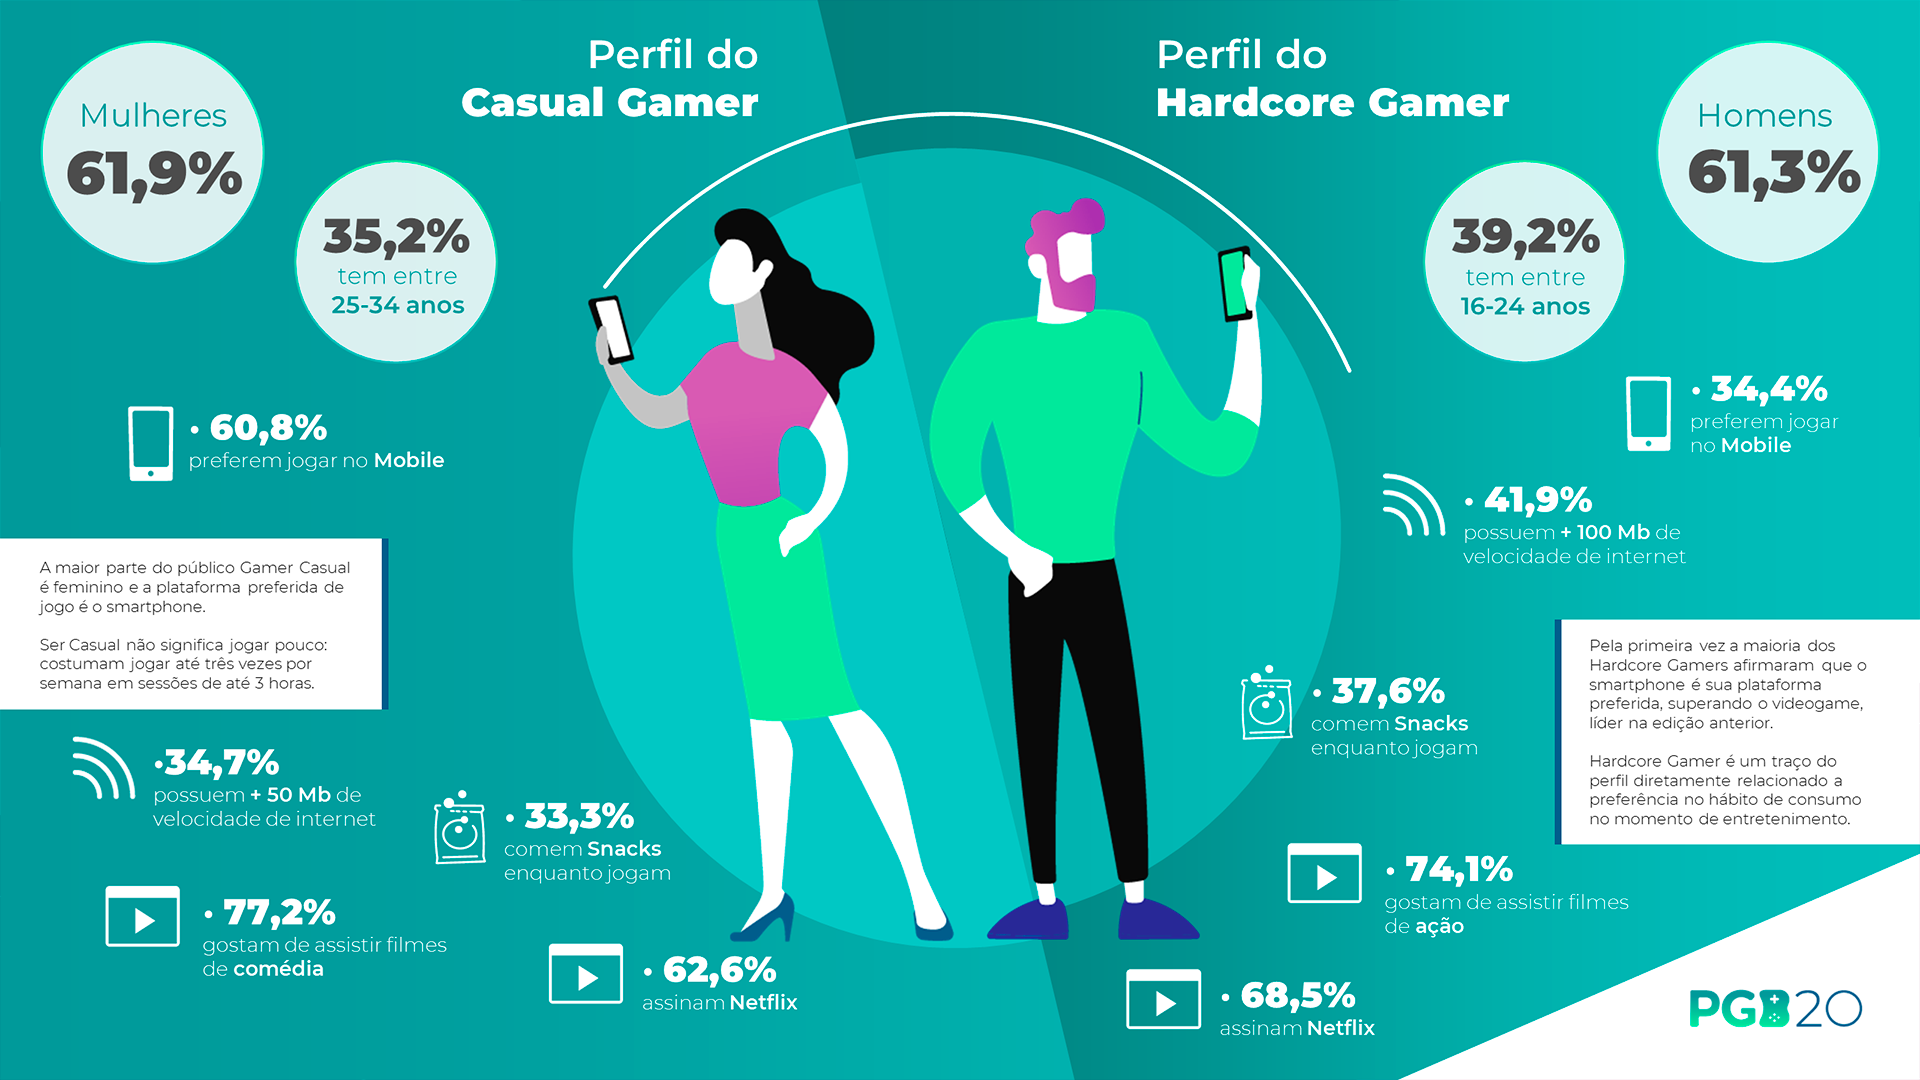 Público gamer cresce e 3 em cada 4 brasileiros consomem jogos